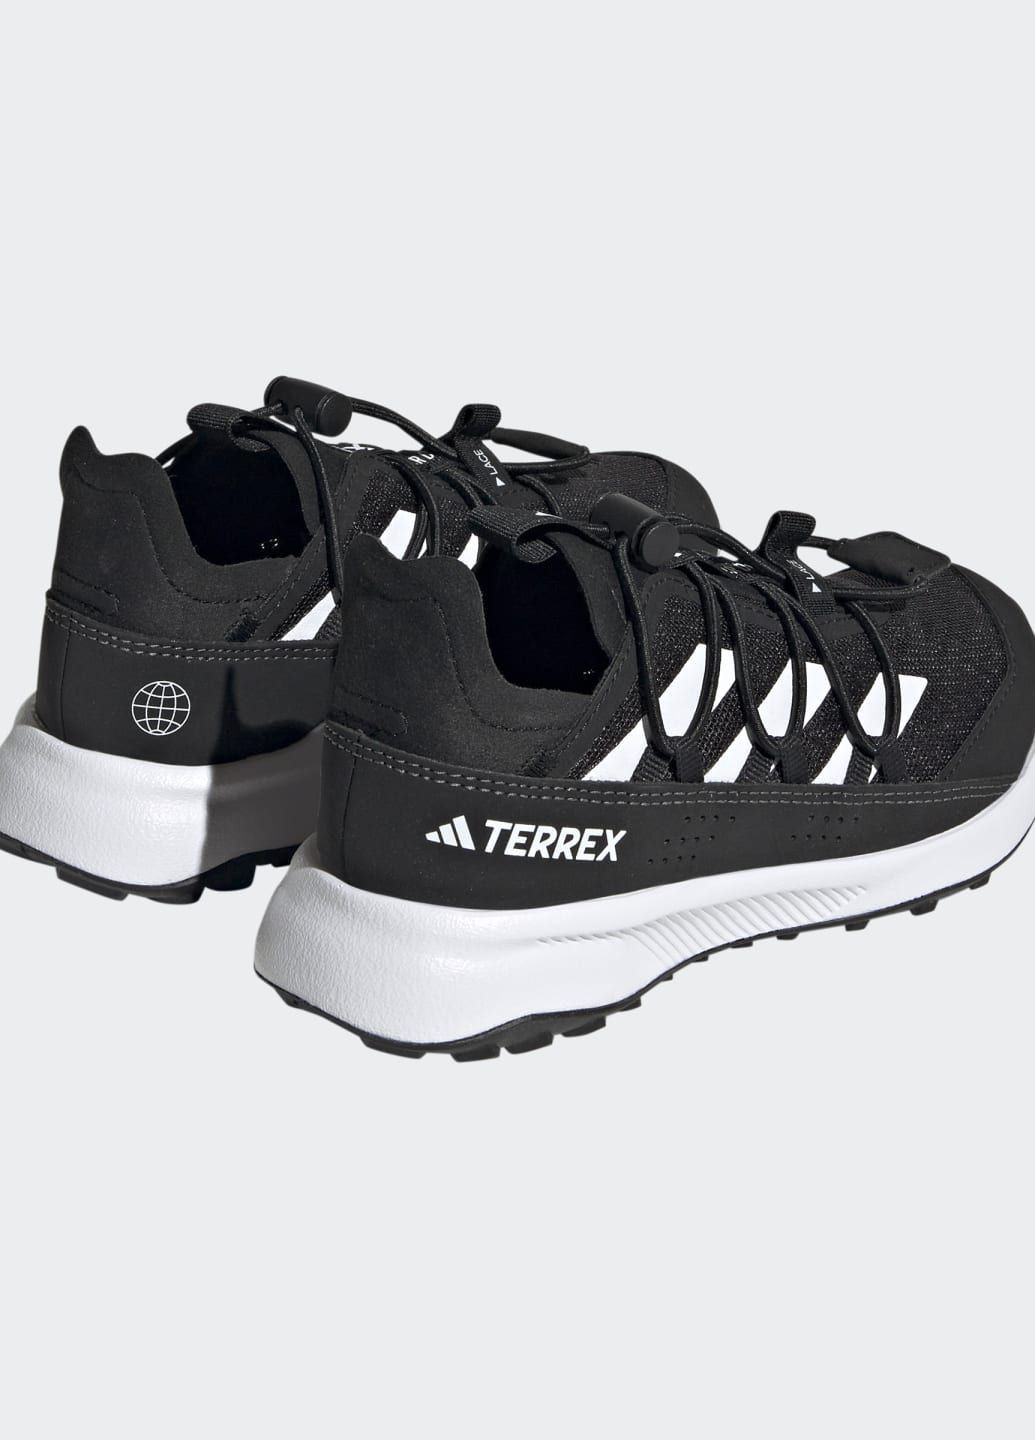 Чорні всесезонні туристичні кросівки terrex voyager 21 heat.rdy adidas